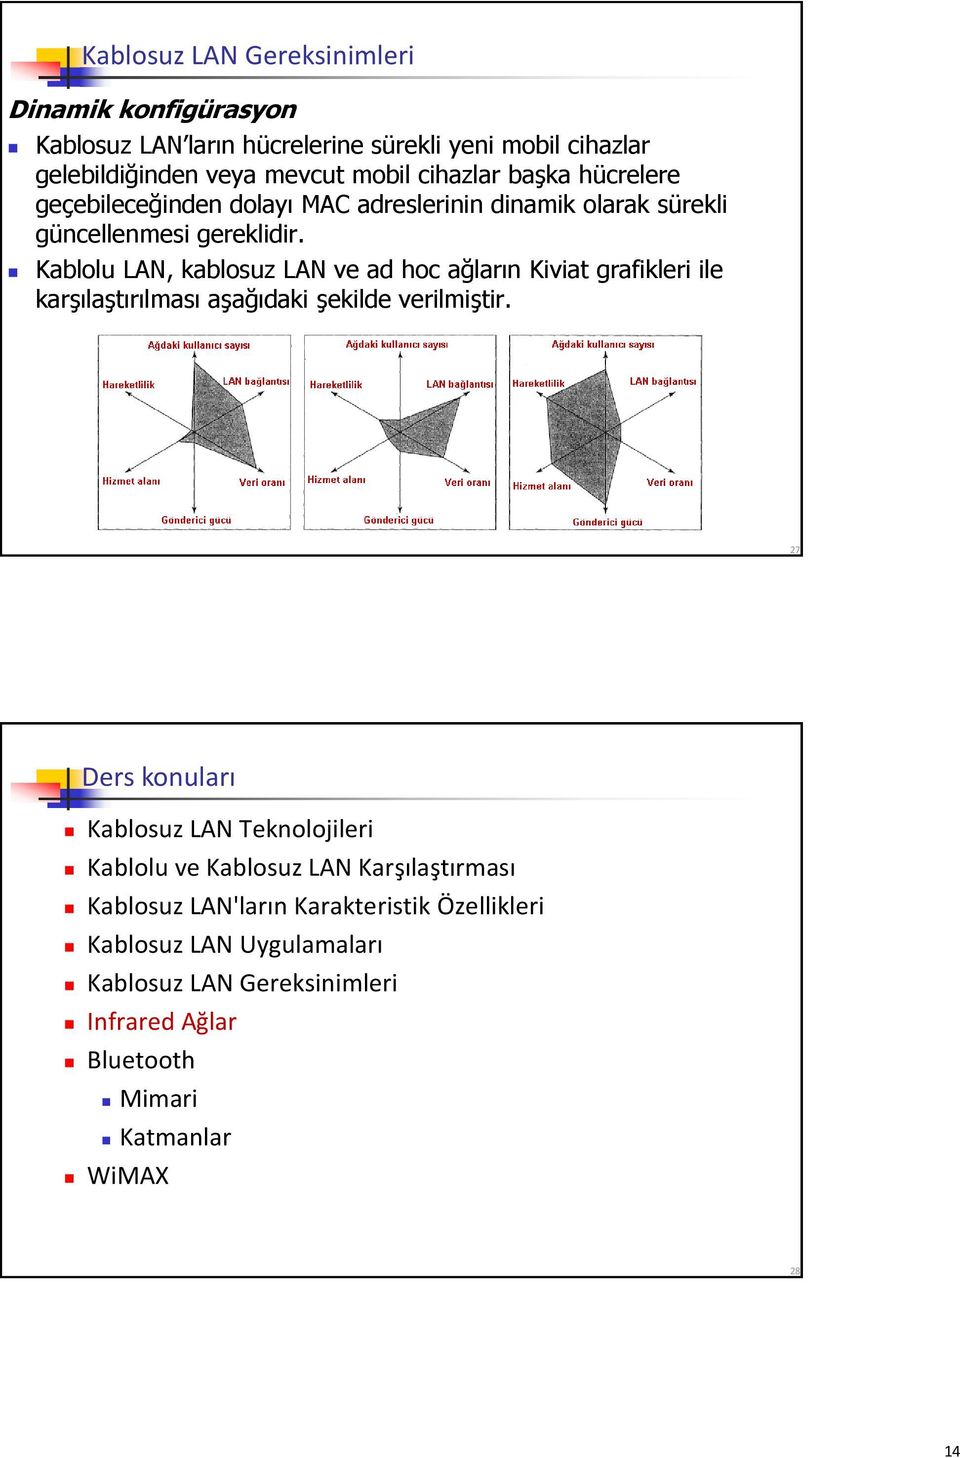 Kablolu LAN, kablosuz LAN ve ad hoc ağların Kiviat grafikleri ile karşılaştırılması aşağıdaki şekilde verilmiştir.